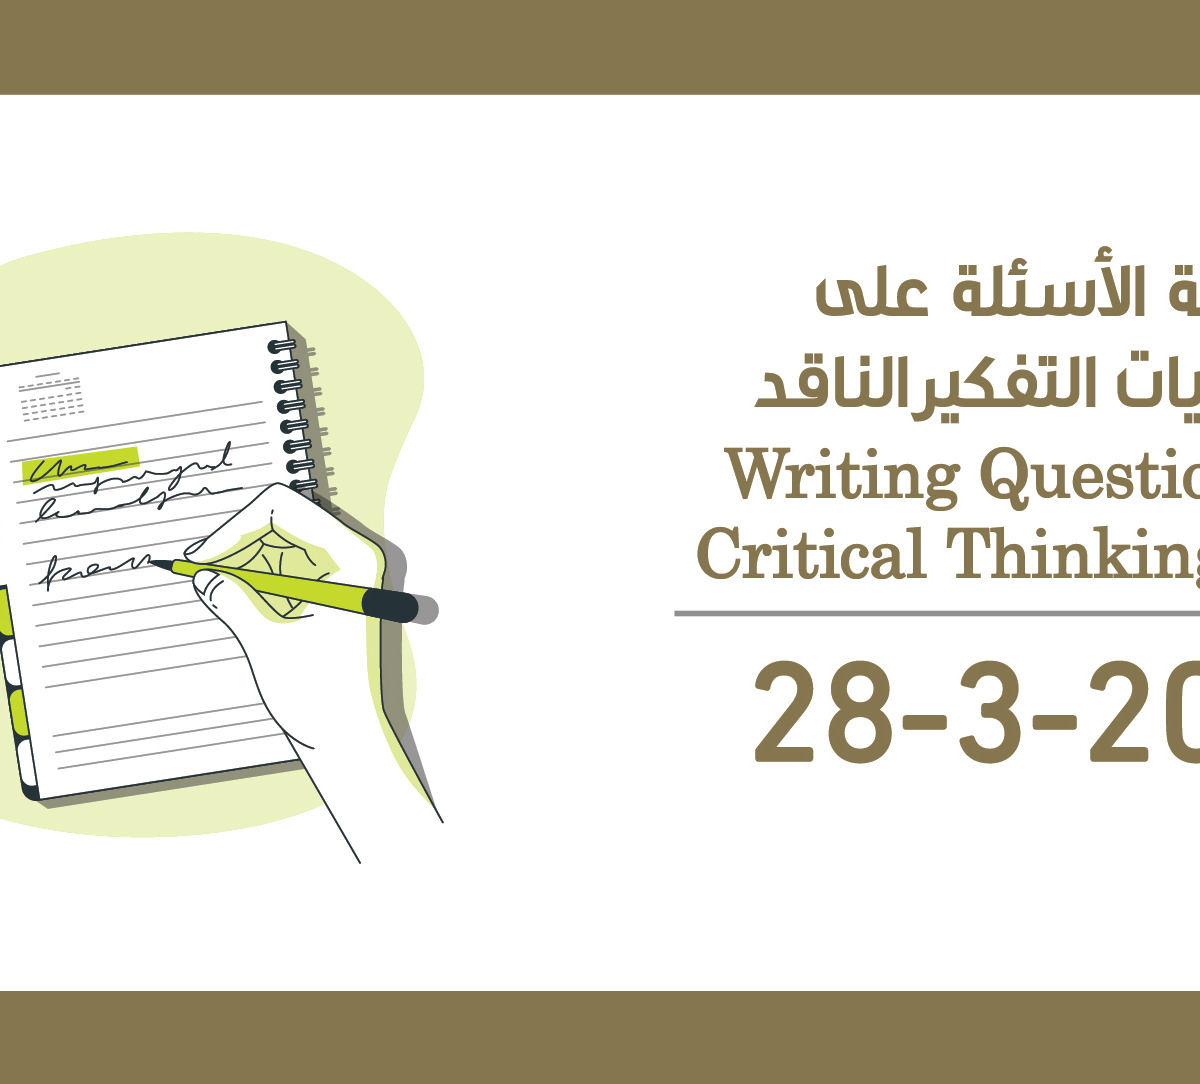 أكاديمية الملكة رانيا لتدريب المعلمين كتابة الأسئلة على مستويات